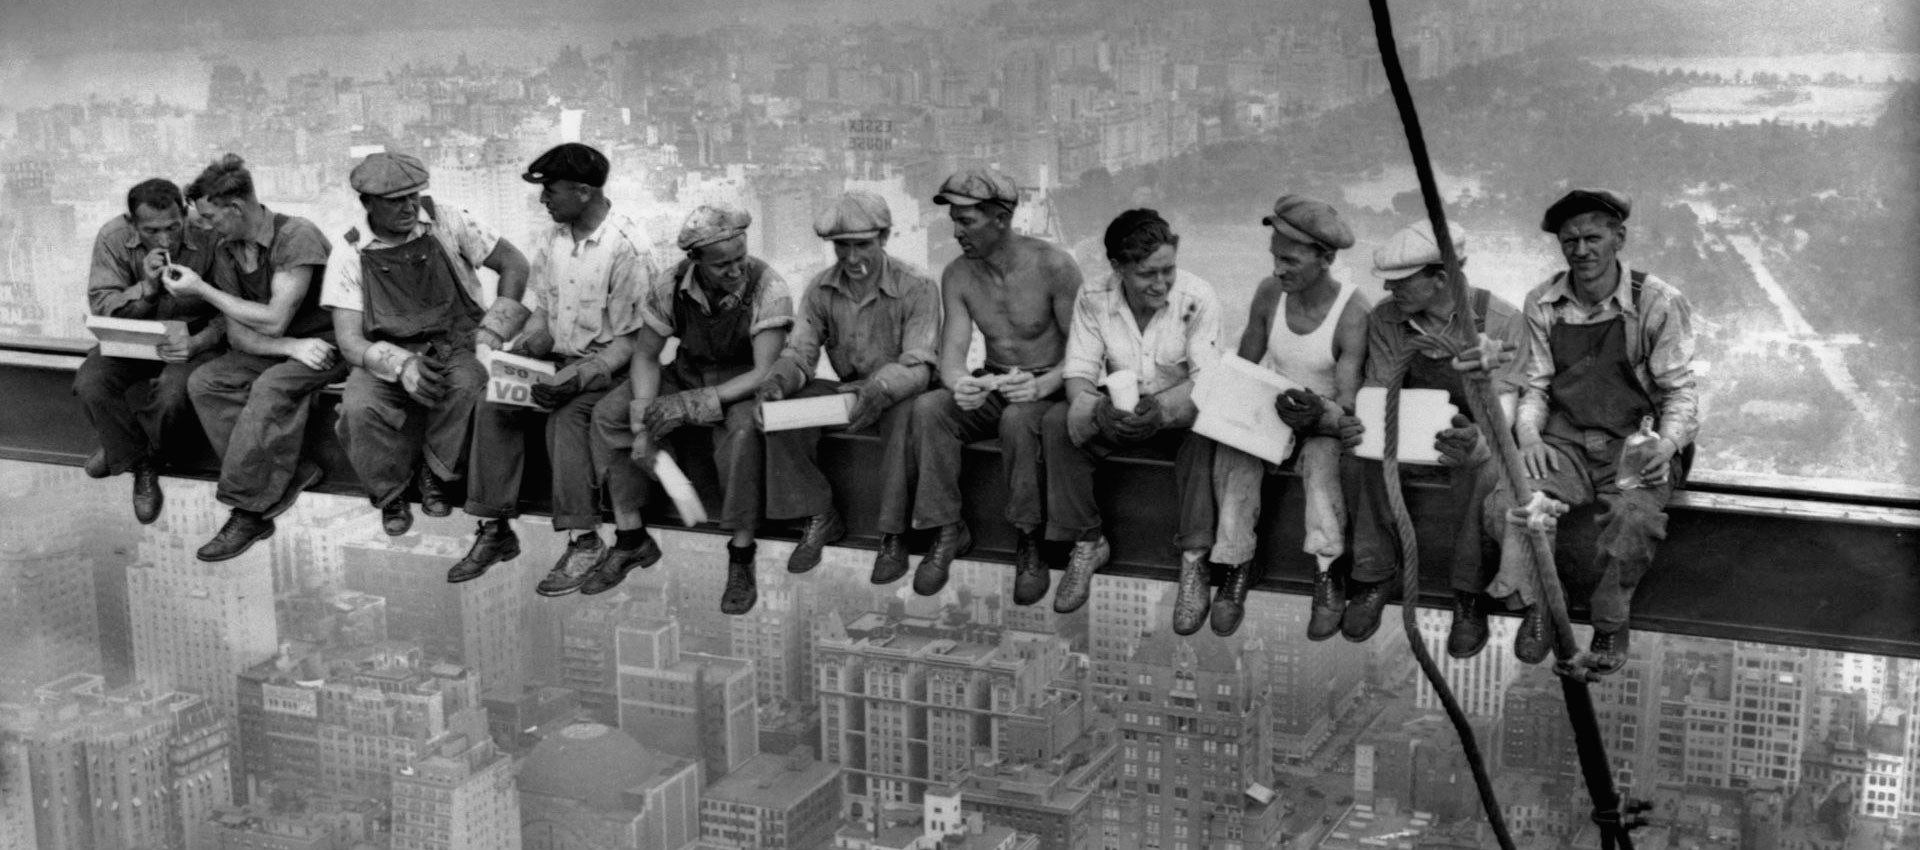 Almuerzo en lo alto del rascacielos: La historia de la foto de 1932